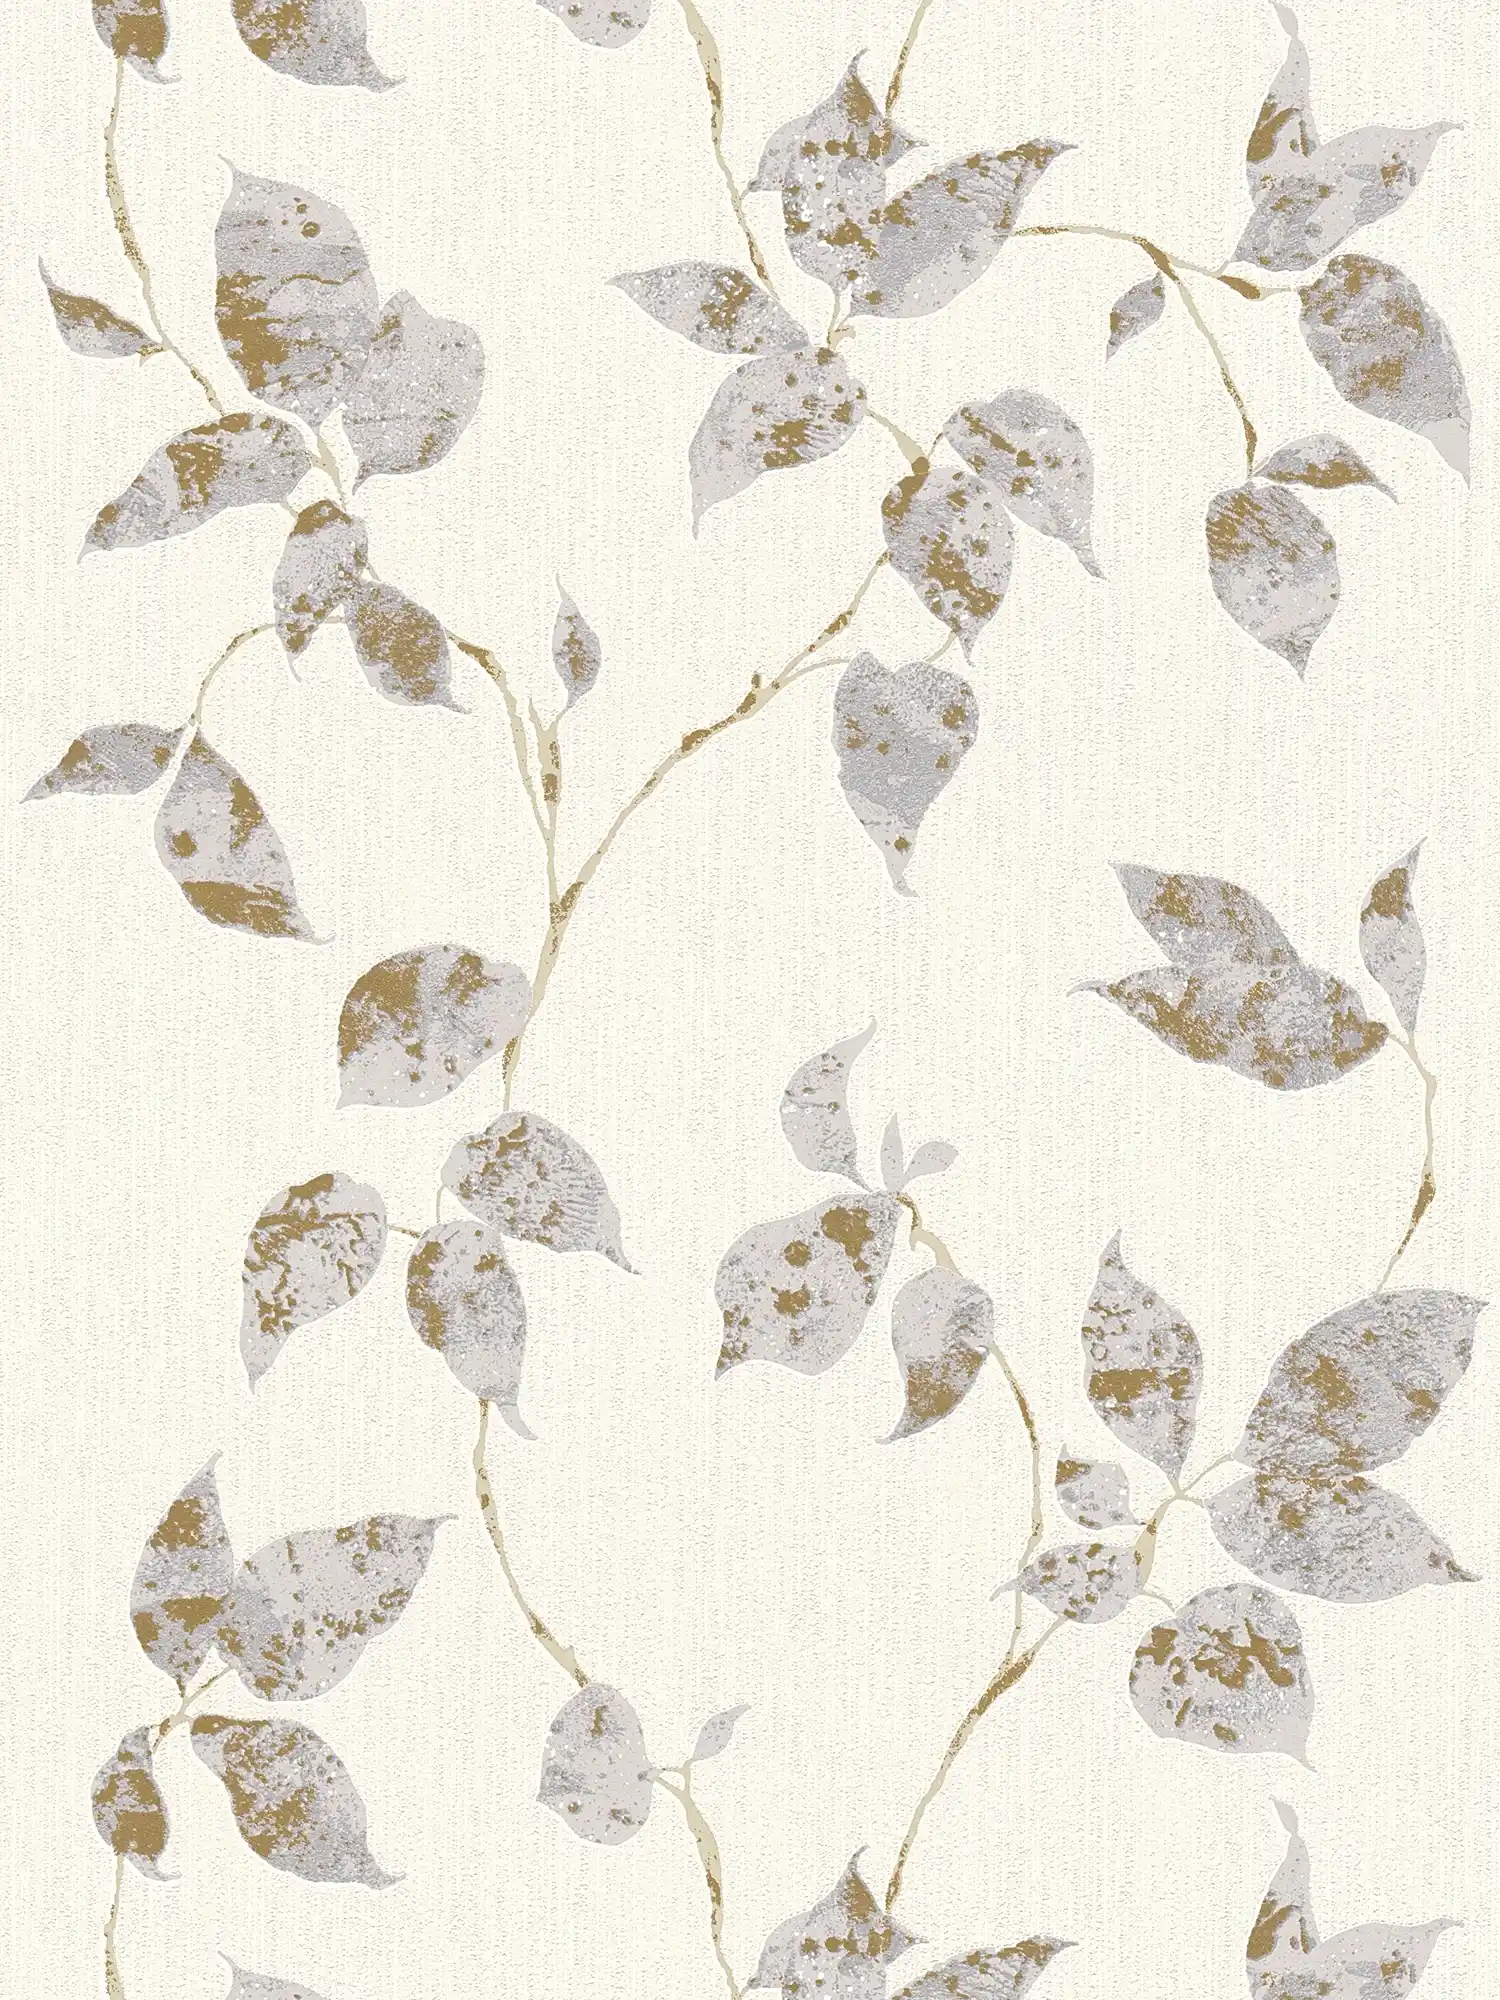 Papier peint texturé avec rinceaux de feuilles & accent métallique - gris, blanc
